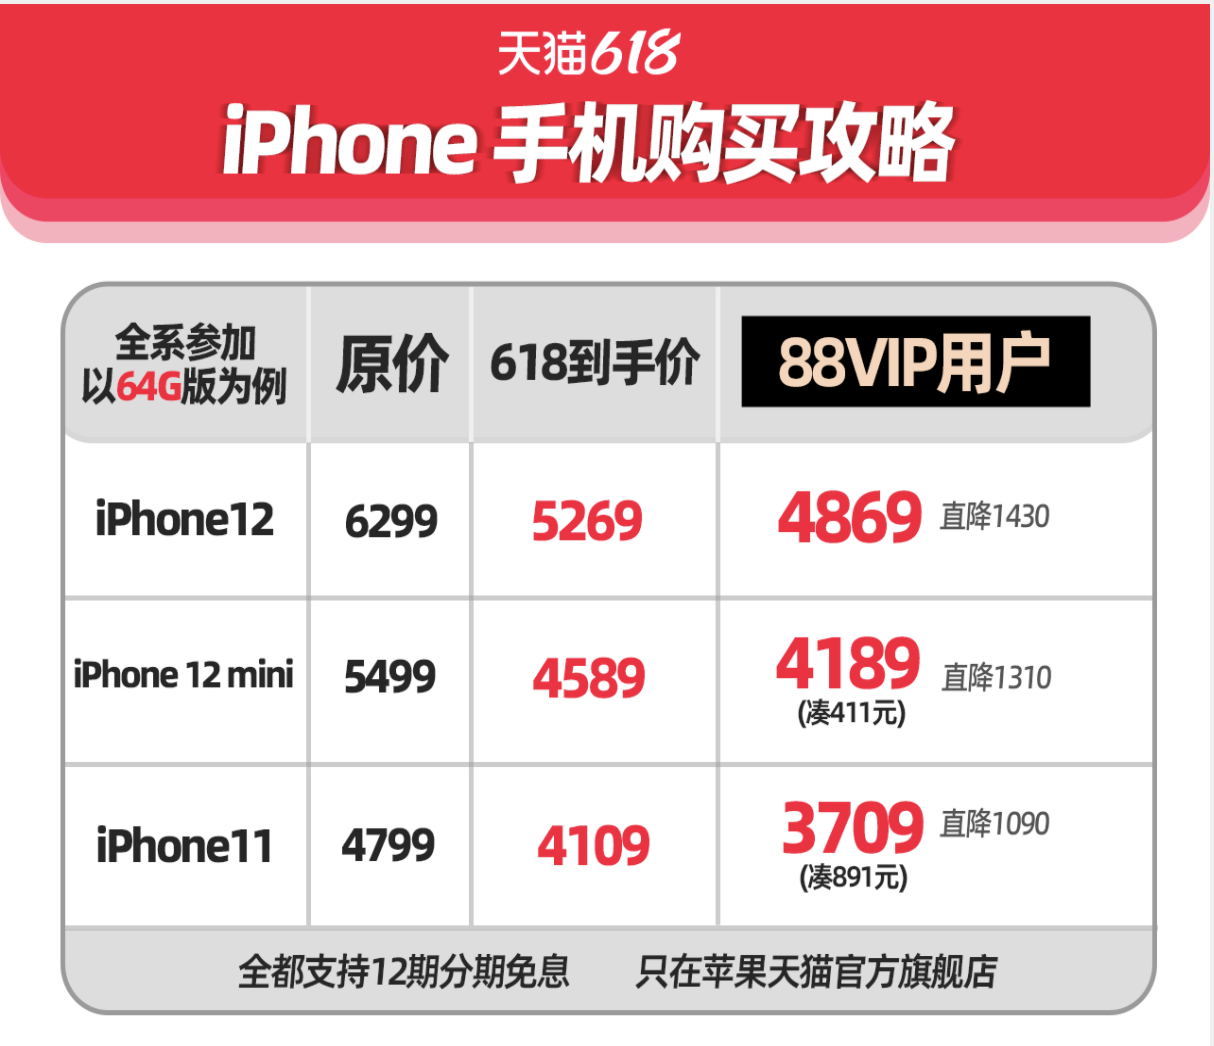 天猫618今晚开买，88VIP用户买手机都是全网最低价